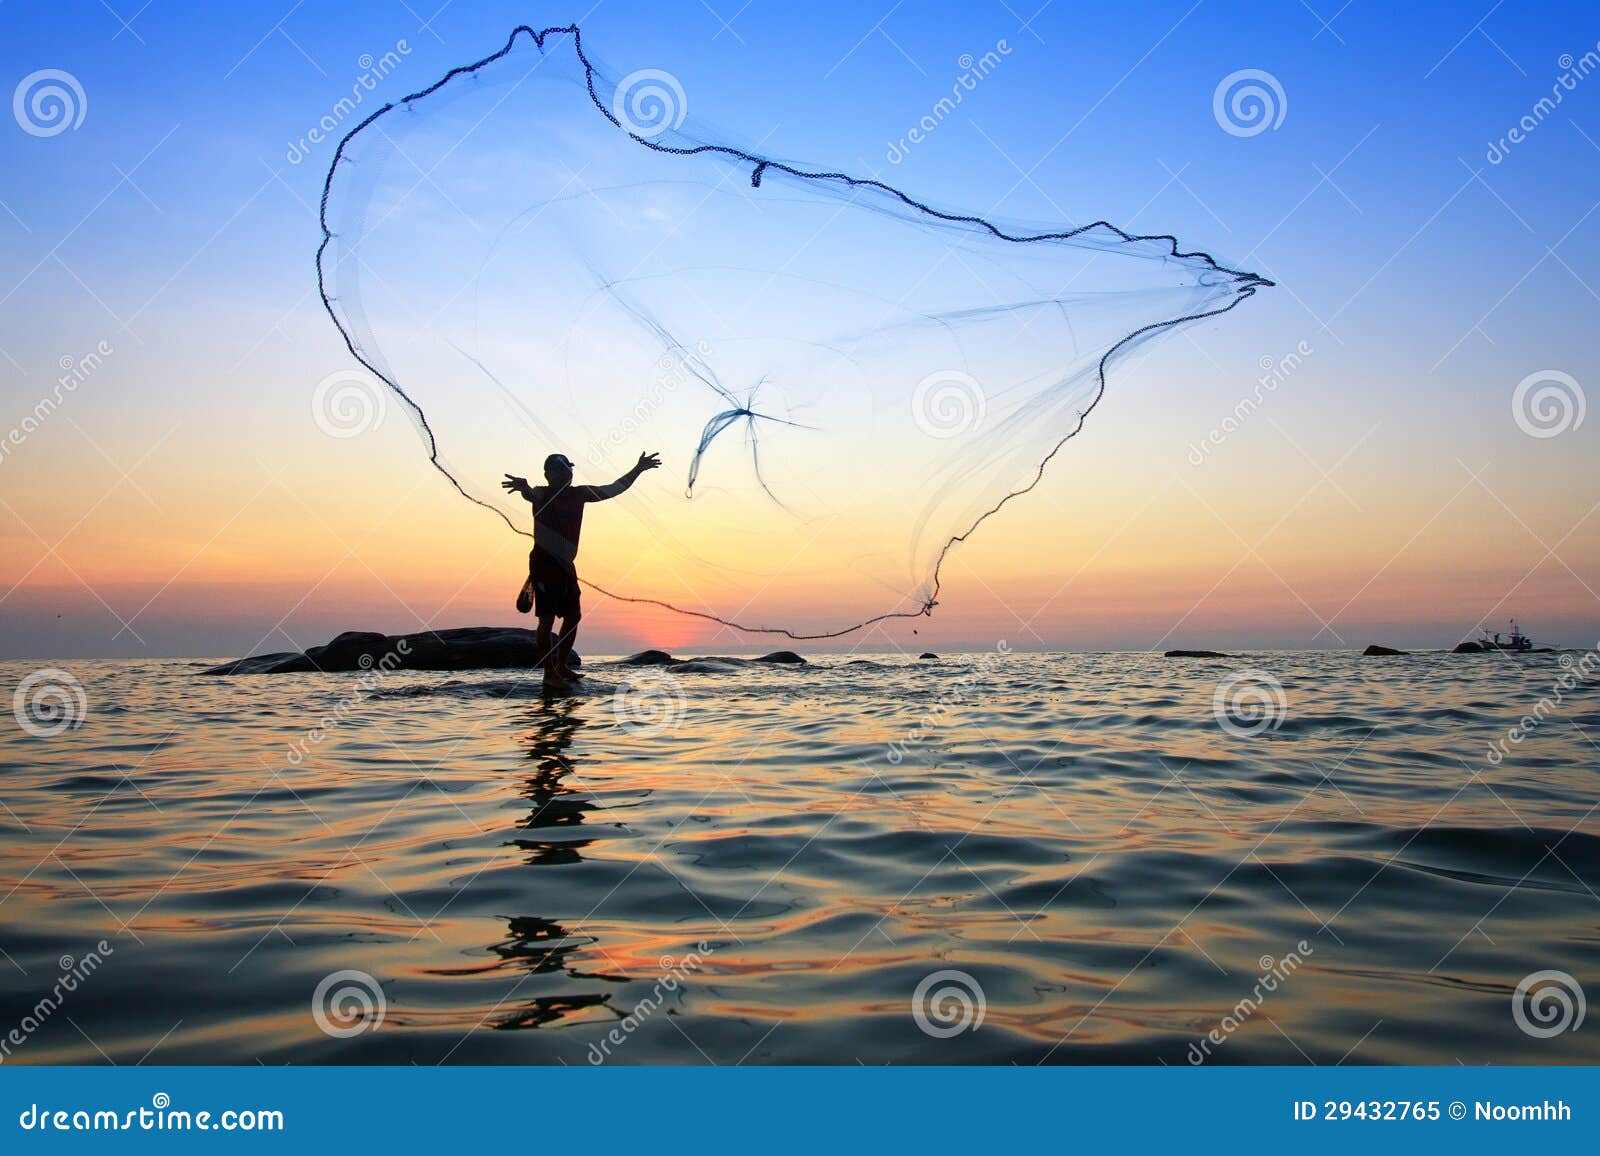 throwing fishing net